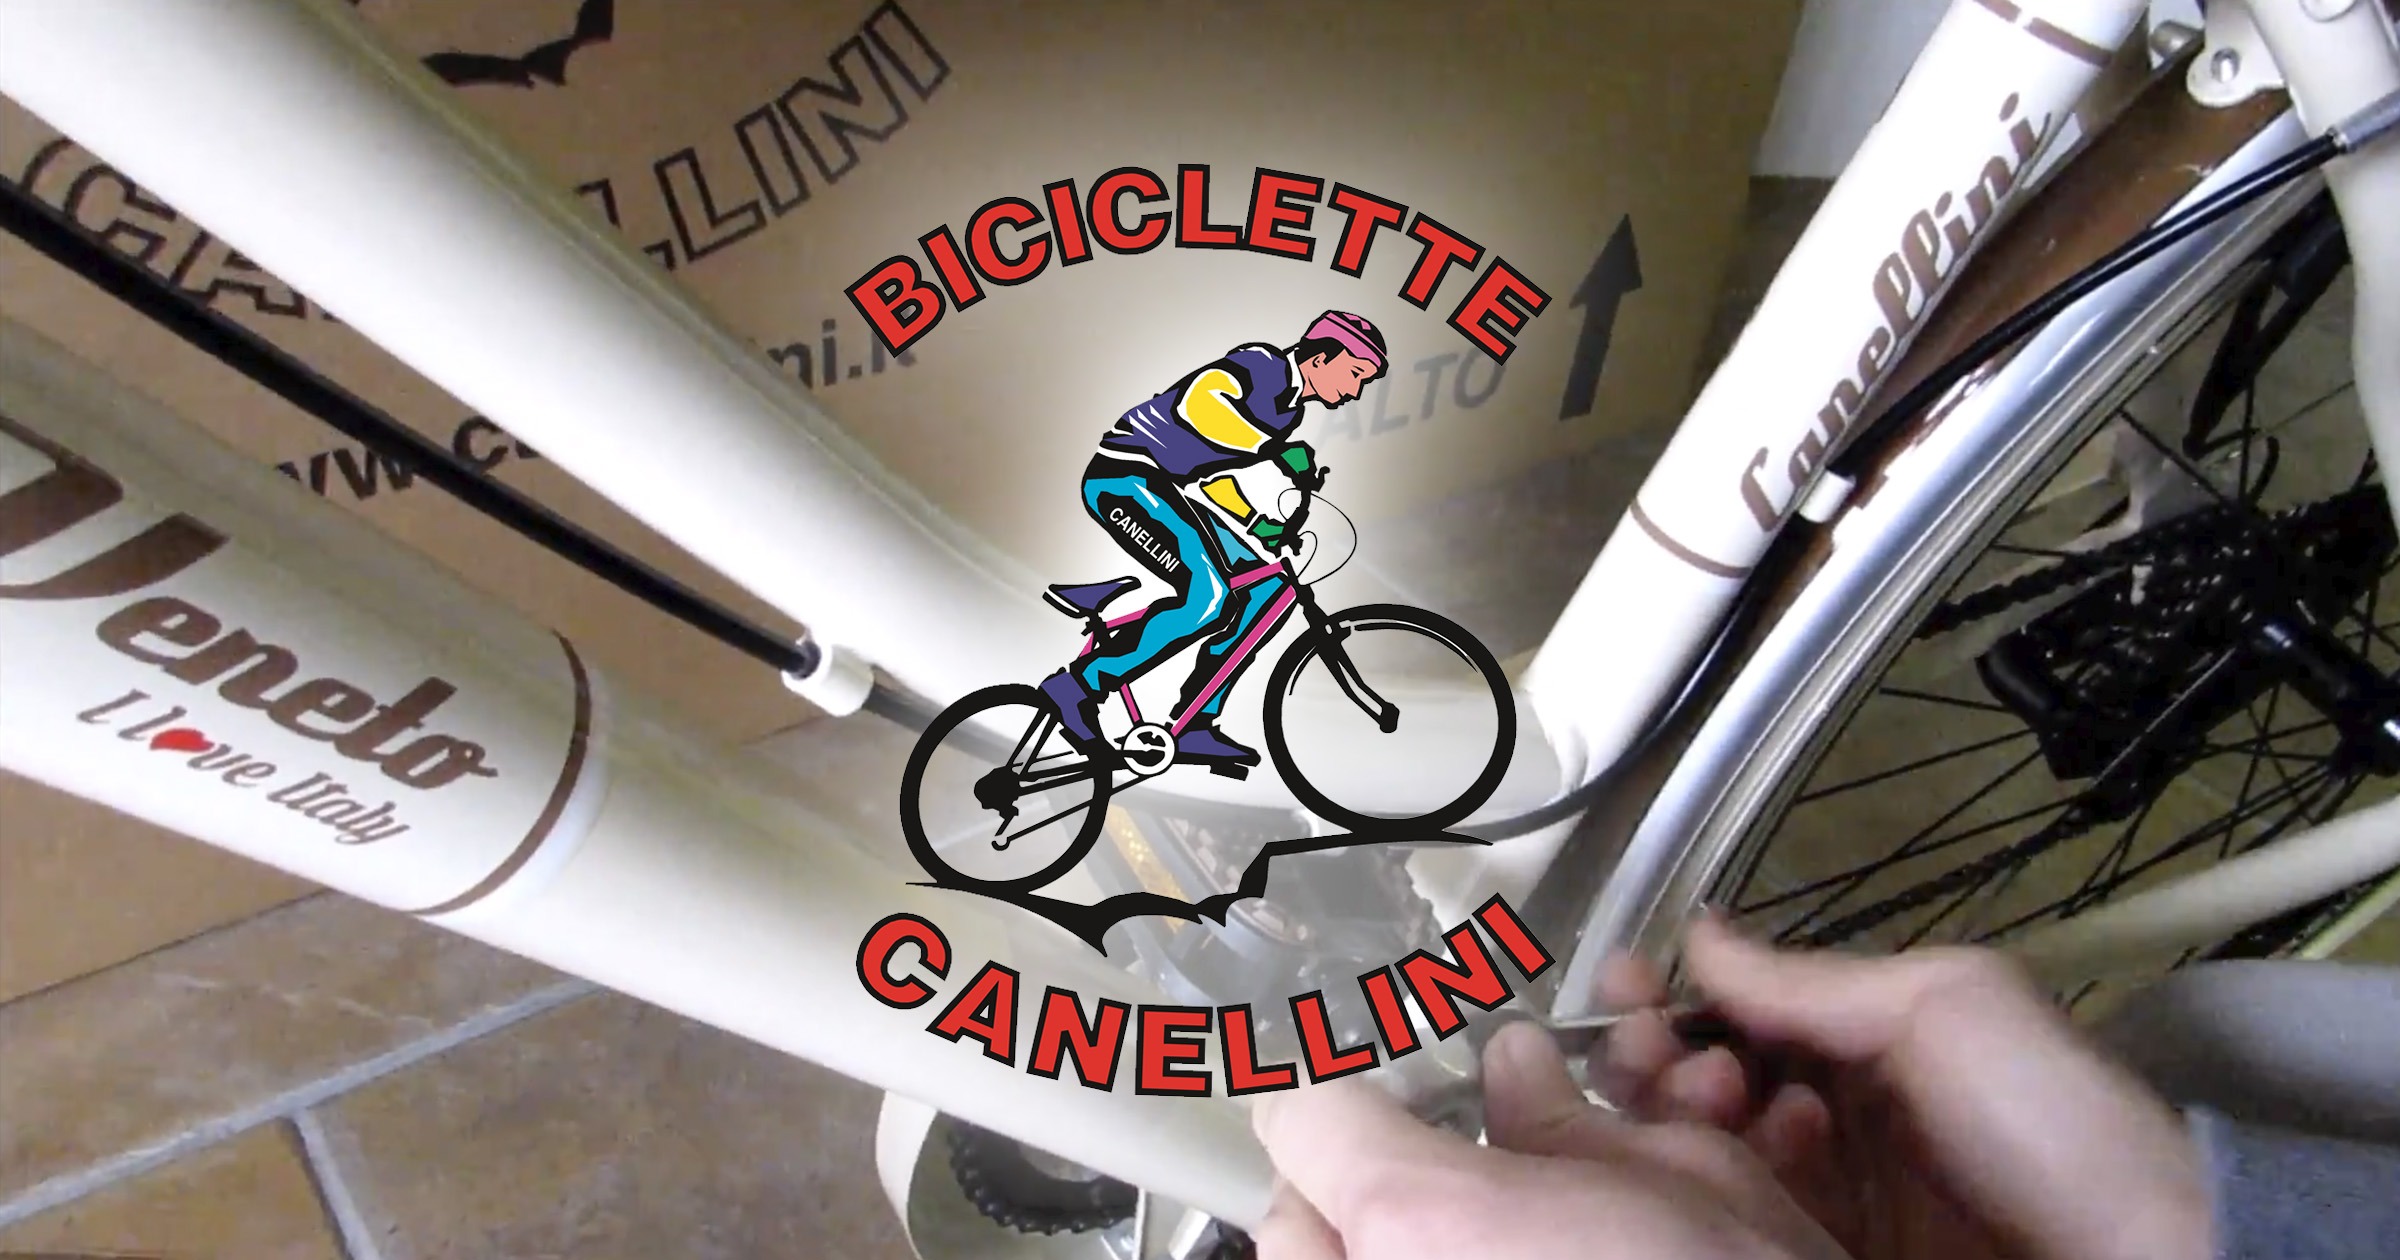 cannellini bikes